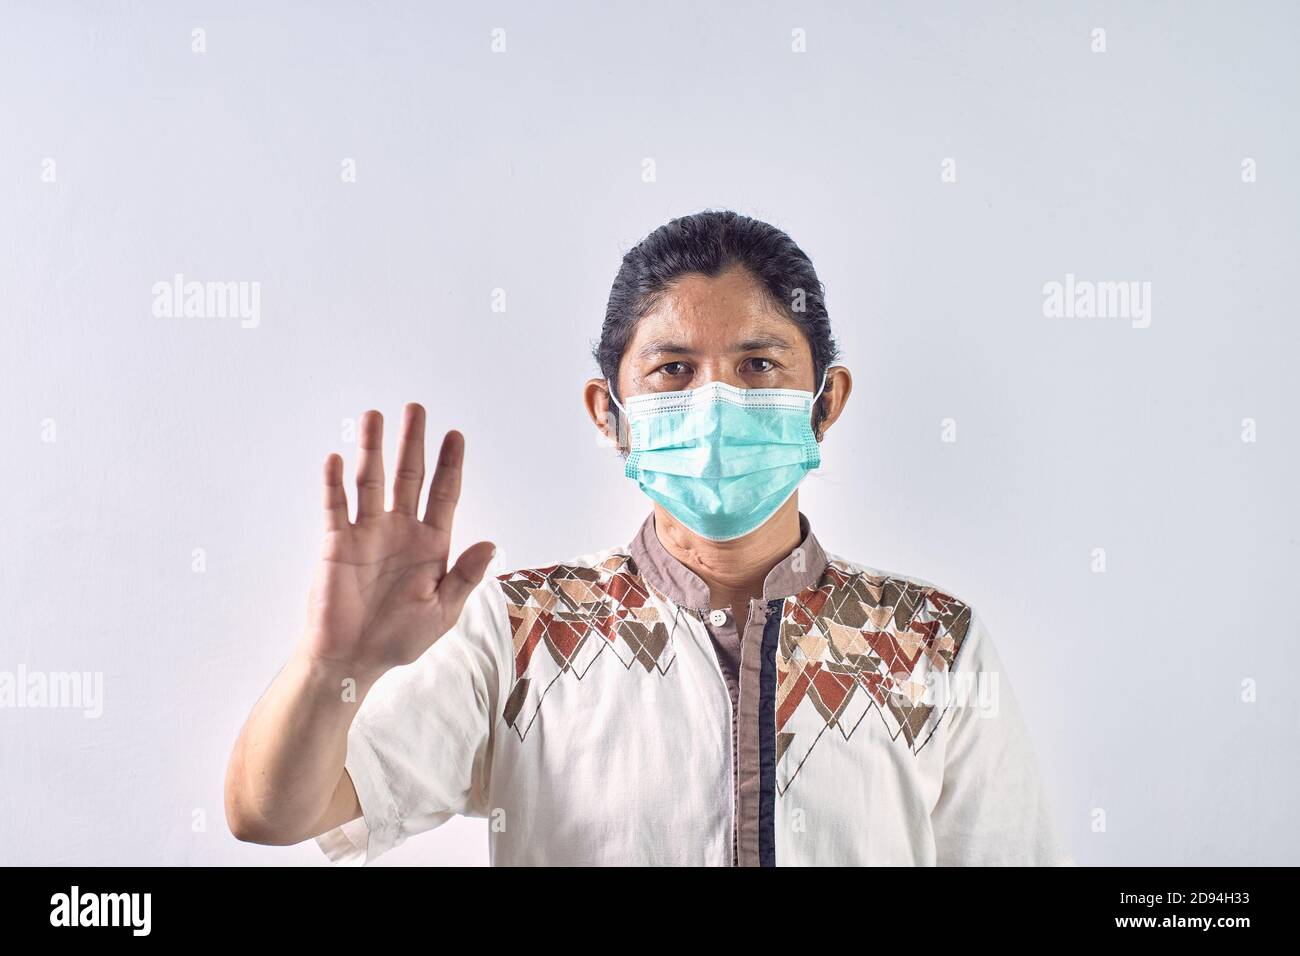 Potrait de l'homme asiatique montrant l'arrêt gestuel. Homme asiatique portant un masque chirurgical pour se protéger contre les virus et les pollutions Banque D'Images